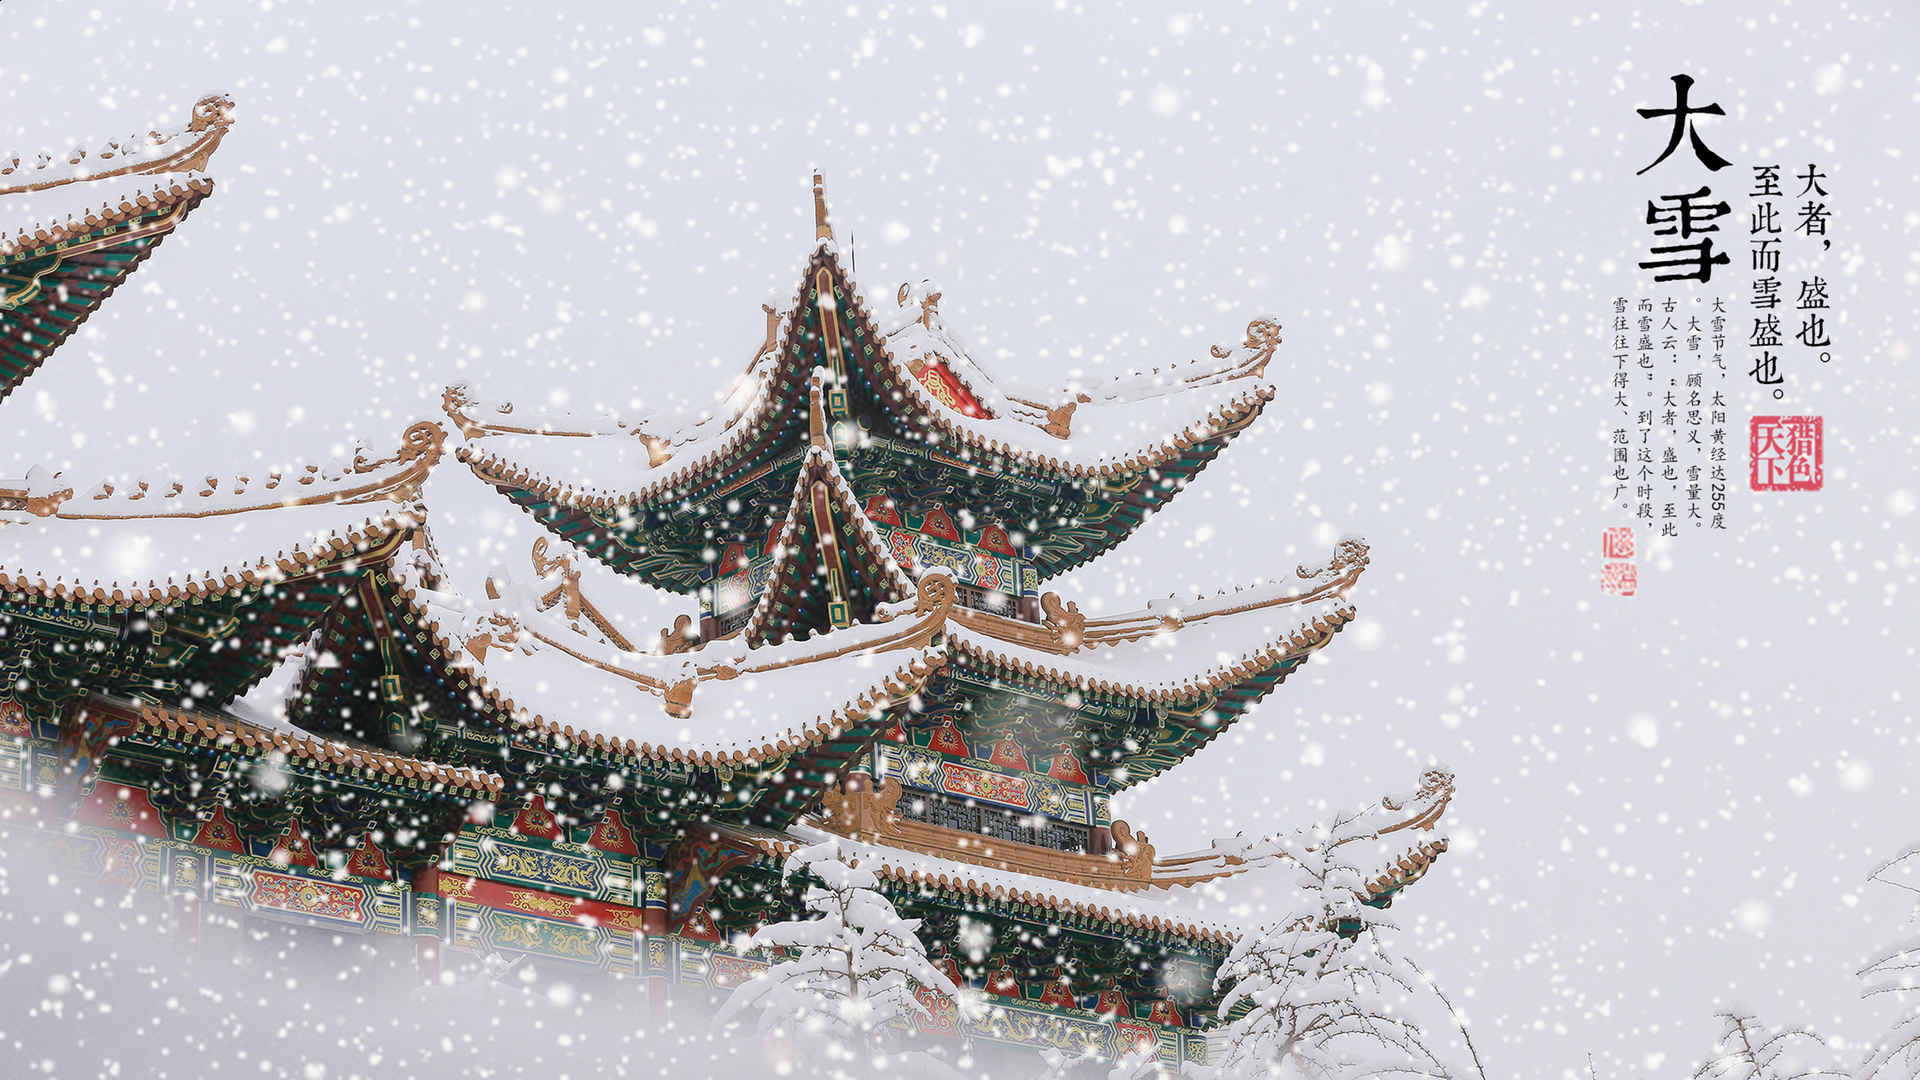 唯美故宫摄影二十四节气“大雪”的高清4K电脑壁纸图片套图1